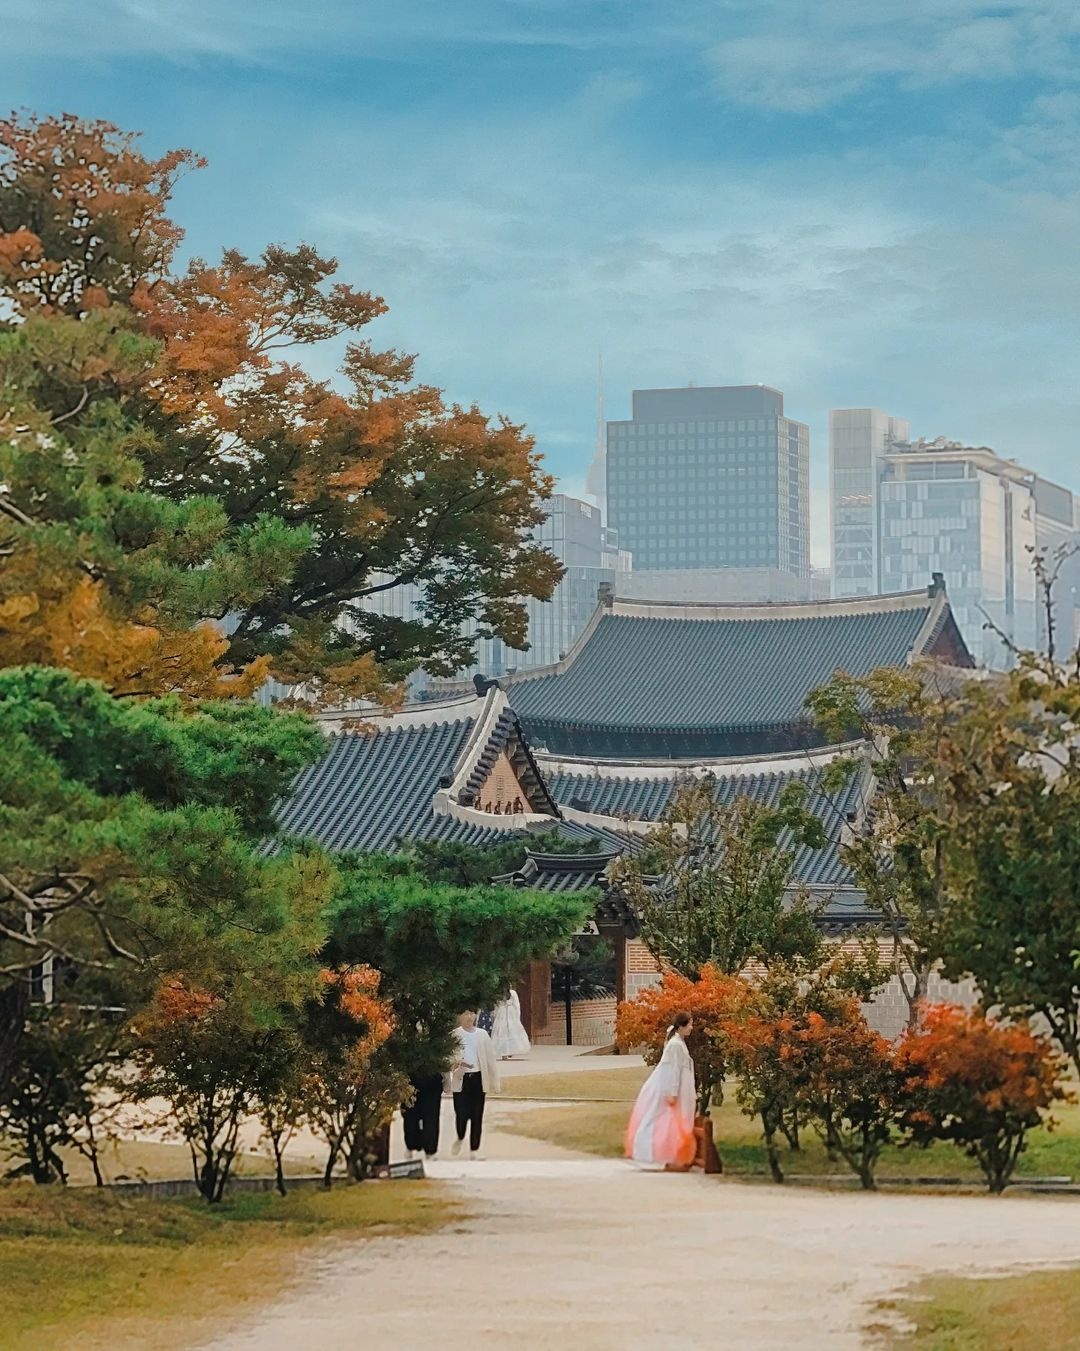 5 điểm ngắm lá vàng mùa thu gần trung tâm Seoul - 5